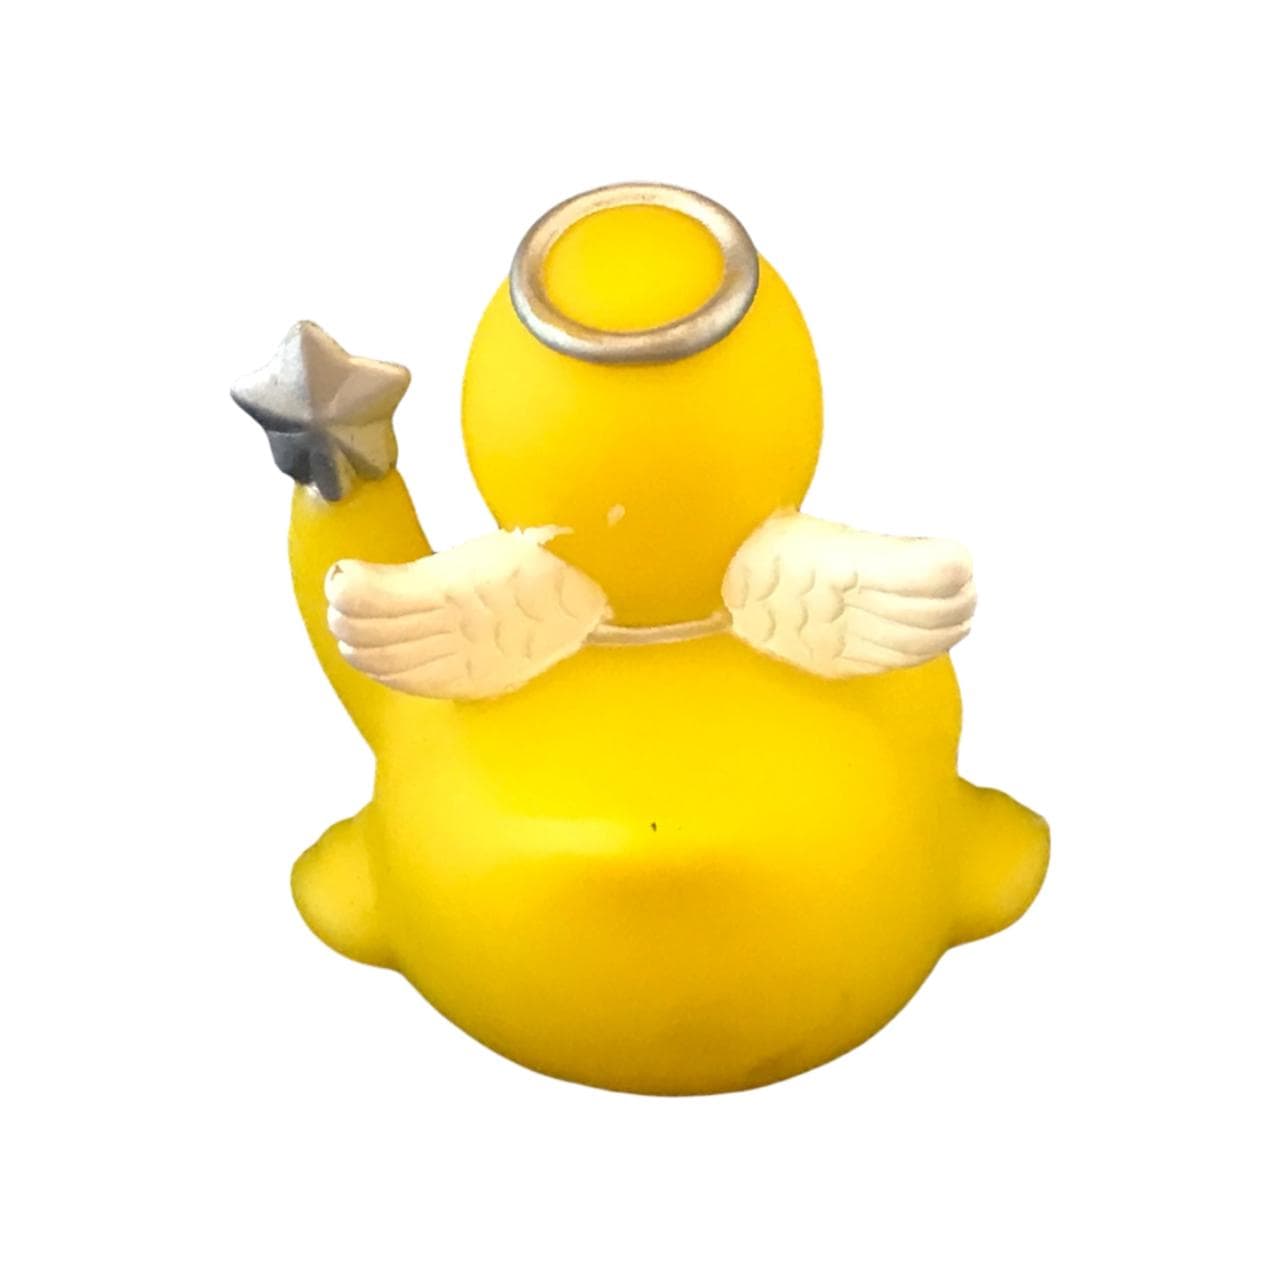 Buy Angel Rubber Duck in White | Spread Joy | Essex Duck™